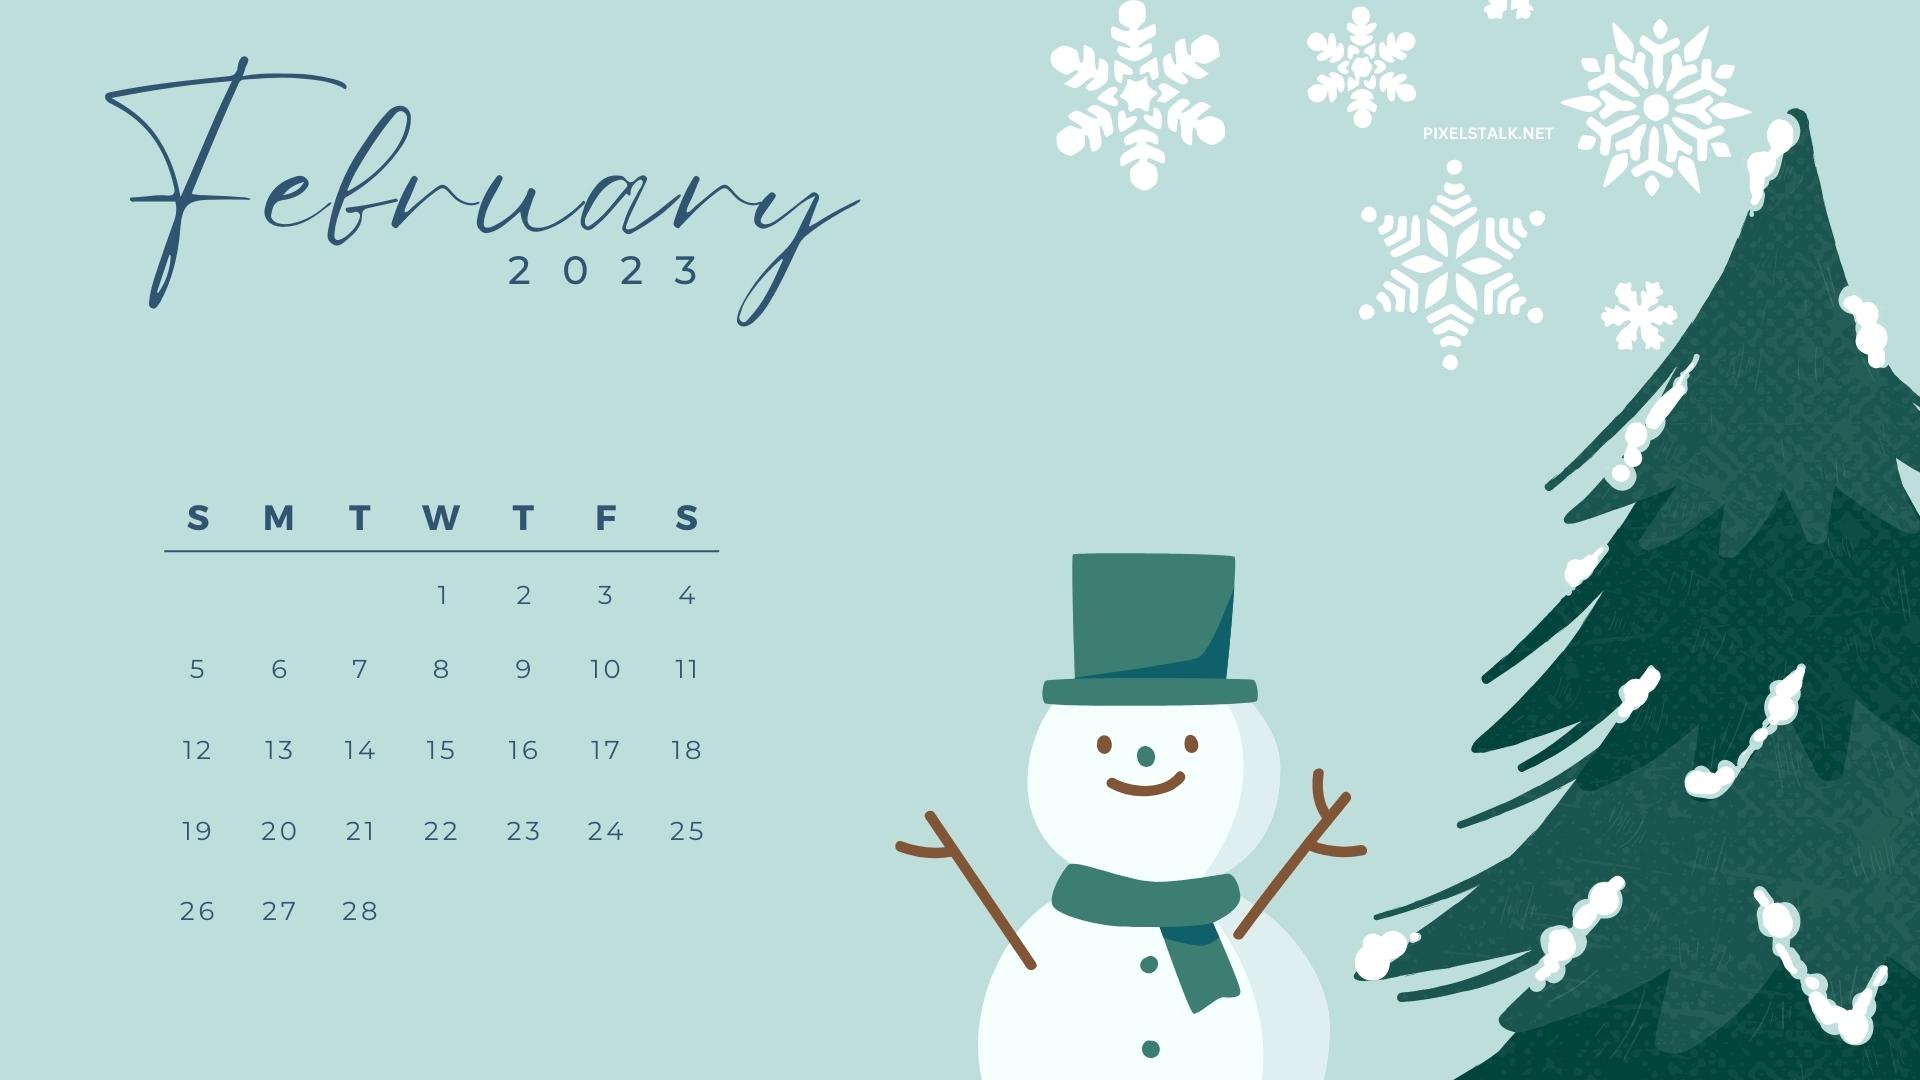 February 2023 Desktop Wallpaper Calendar  CalendarLabs